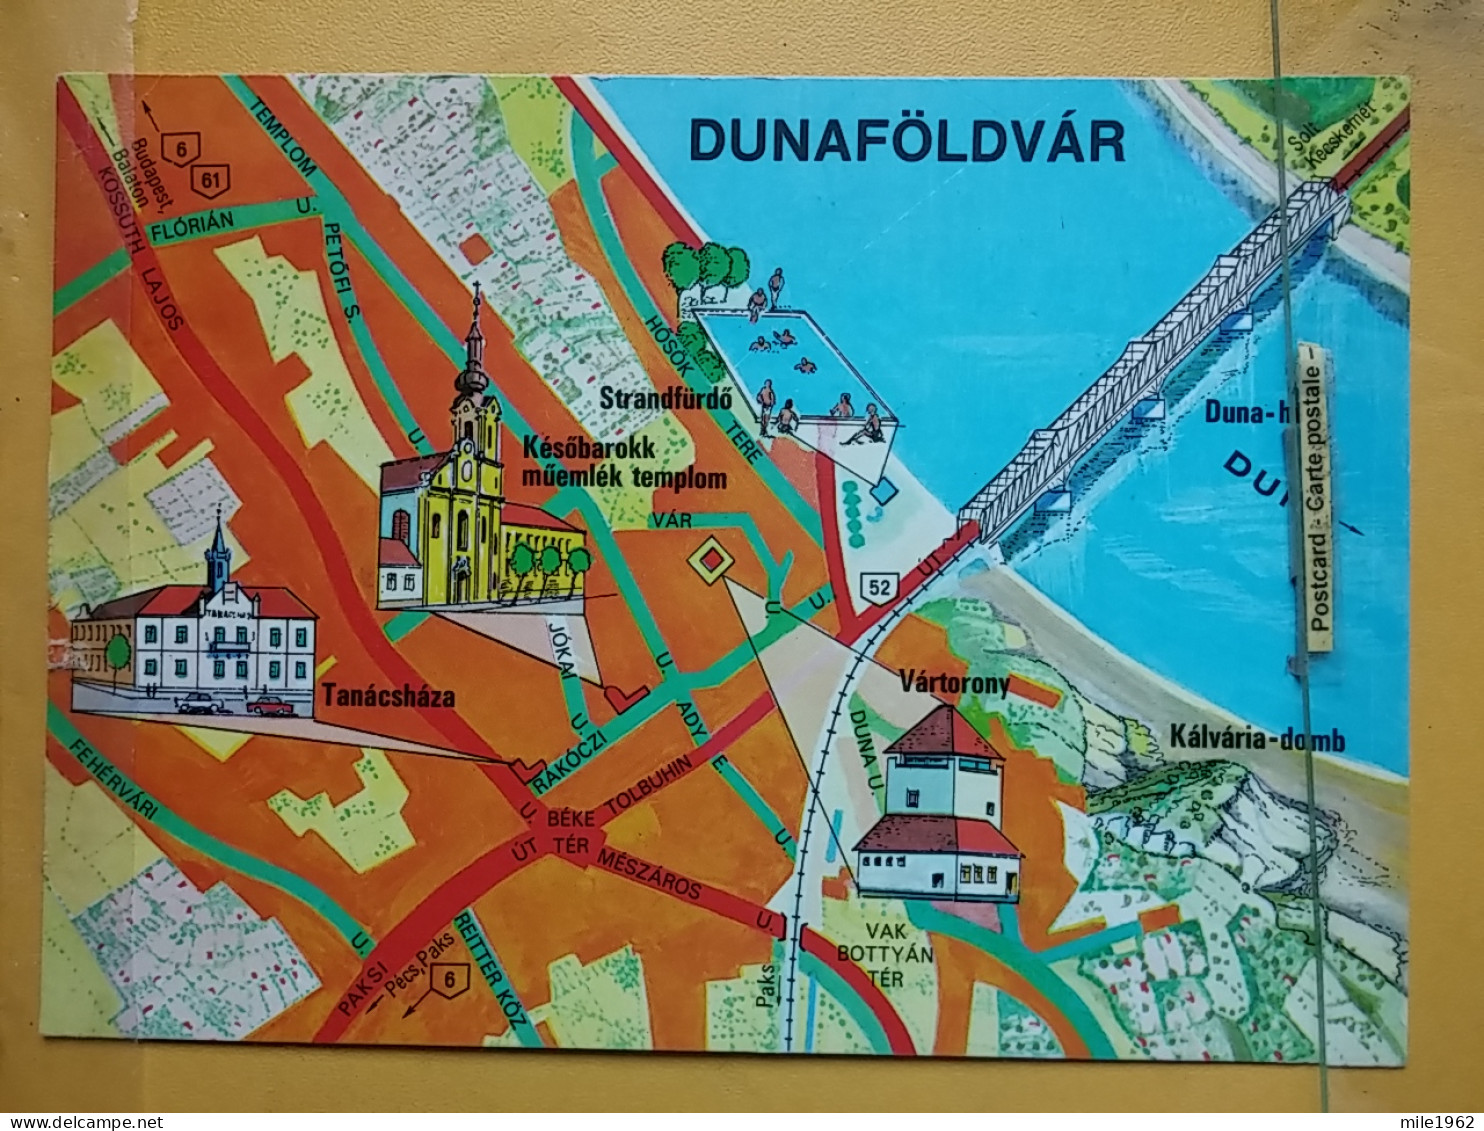 Kov 716-18 - HUNGARY, DUNAFOLDVAR, PLANE MAP - Hungary